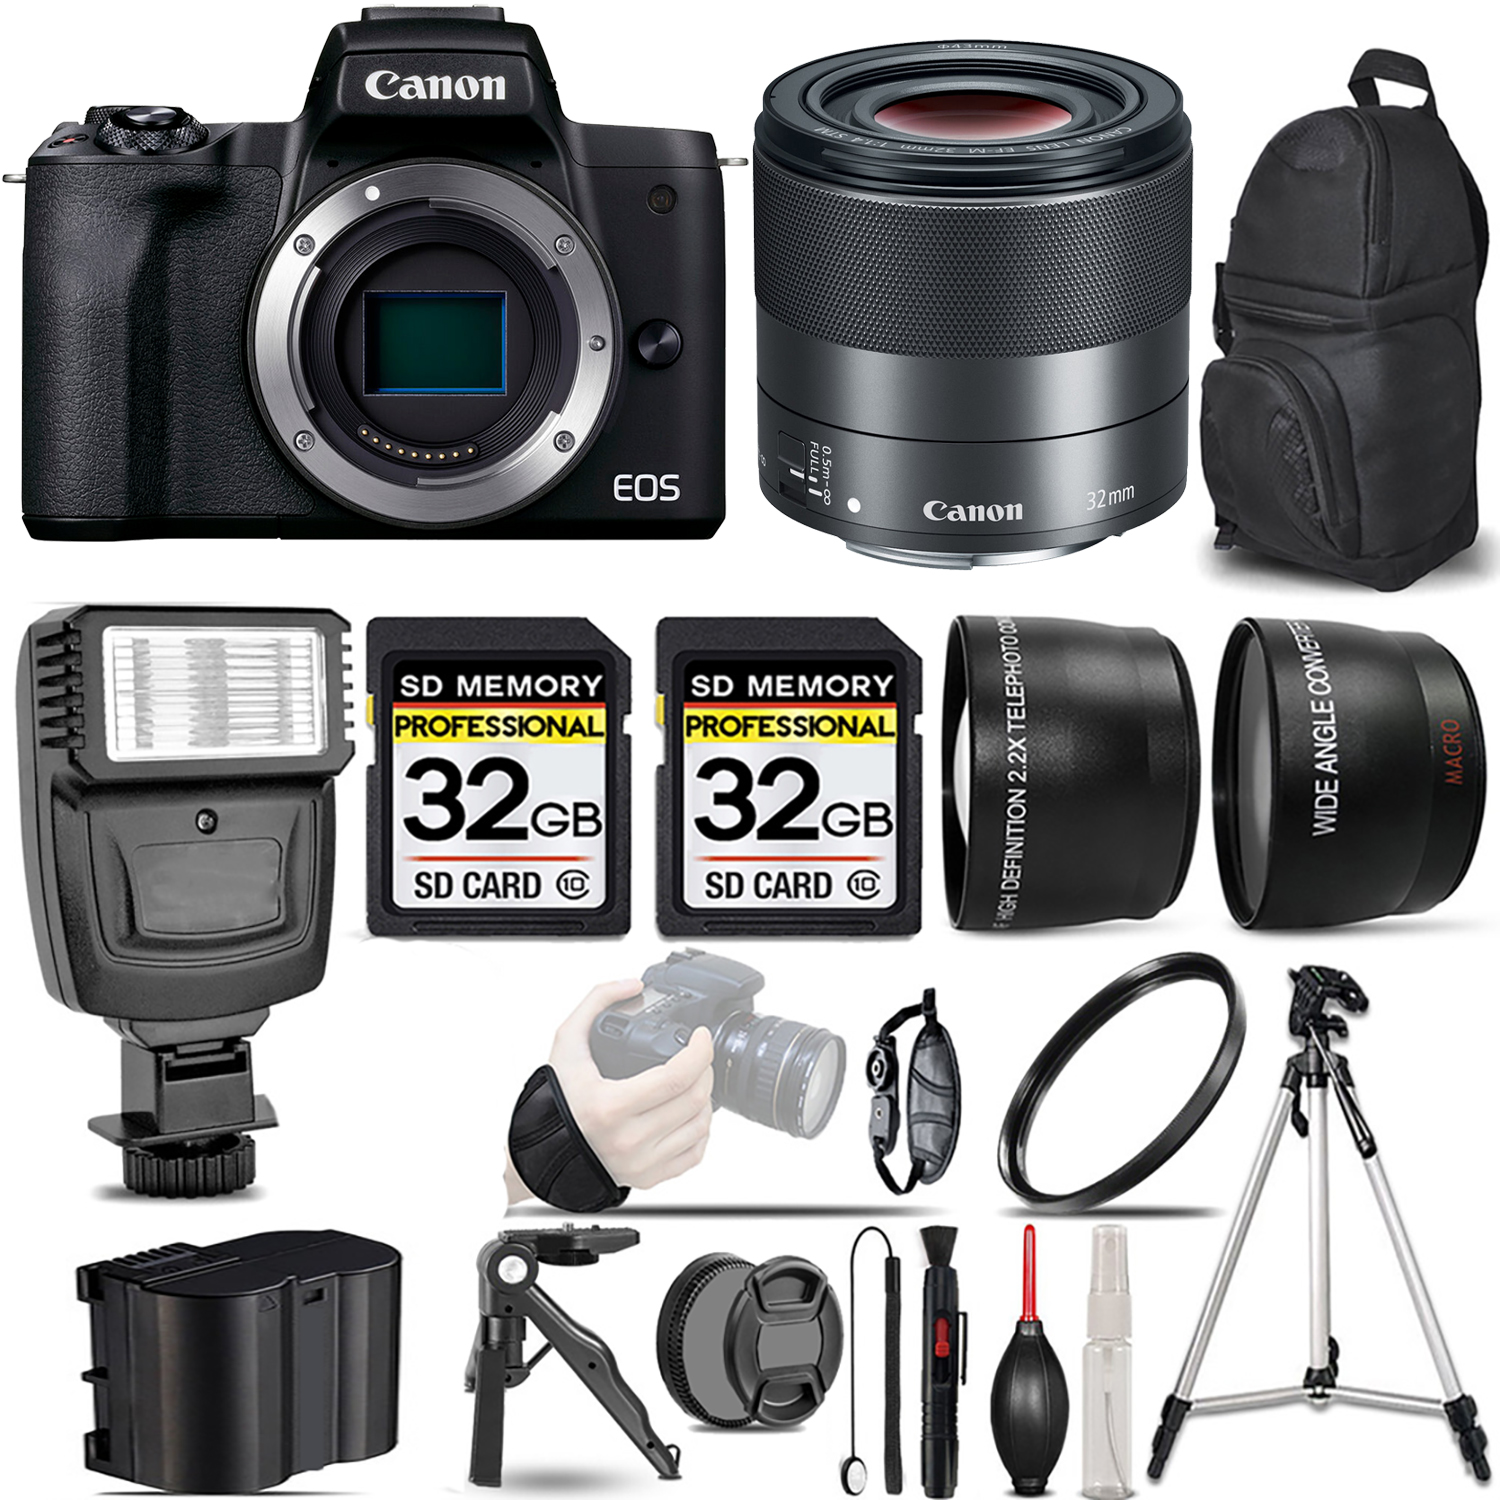 EOS EOS M50 Mark II Camera (Black) + 32mm f/1.4 STM Lens + Flash + 64GB - Kit *FREE SHIPPING*